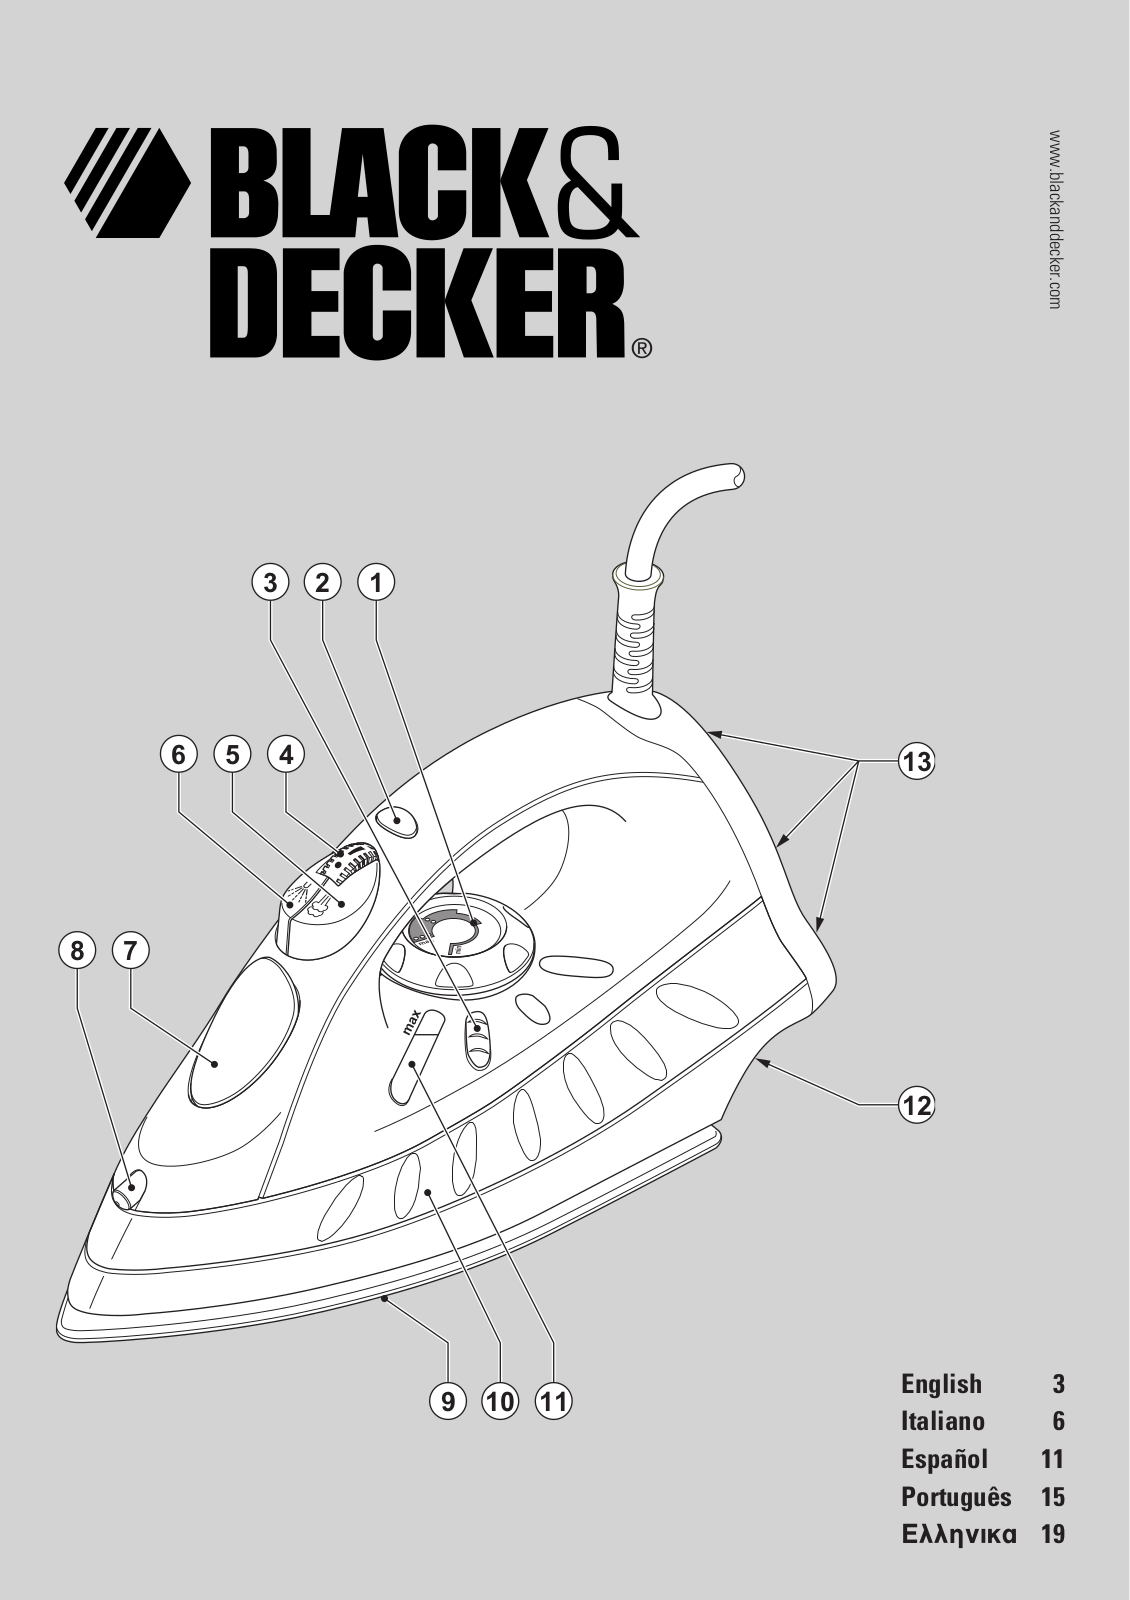 Black & Decker Xt1820, Xt1800, Xt1600 Instruction Manual